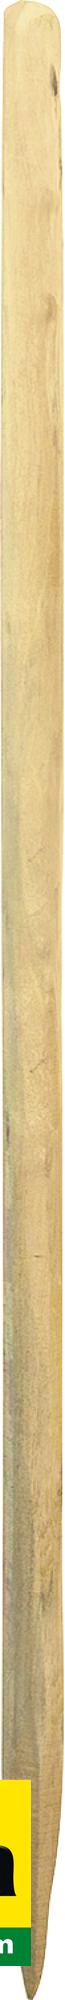 Patura Robinienpfahl, Natur, 1500 mm, d=6-8 cm gespalten, geschliffen, gefast, 219105